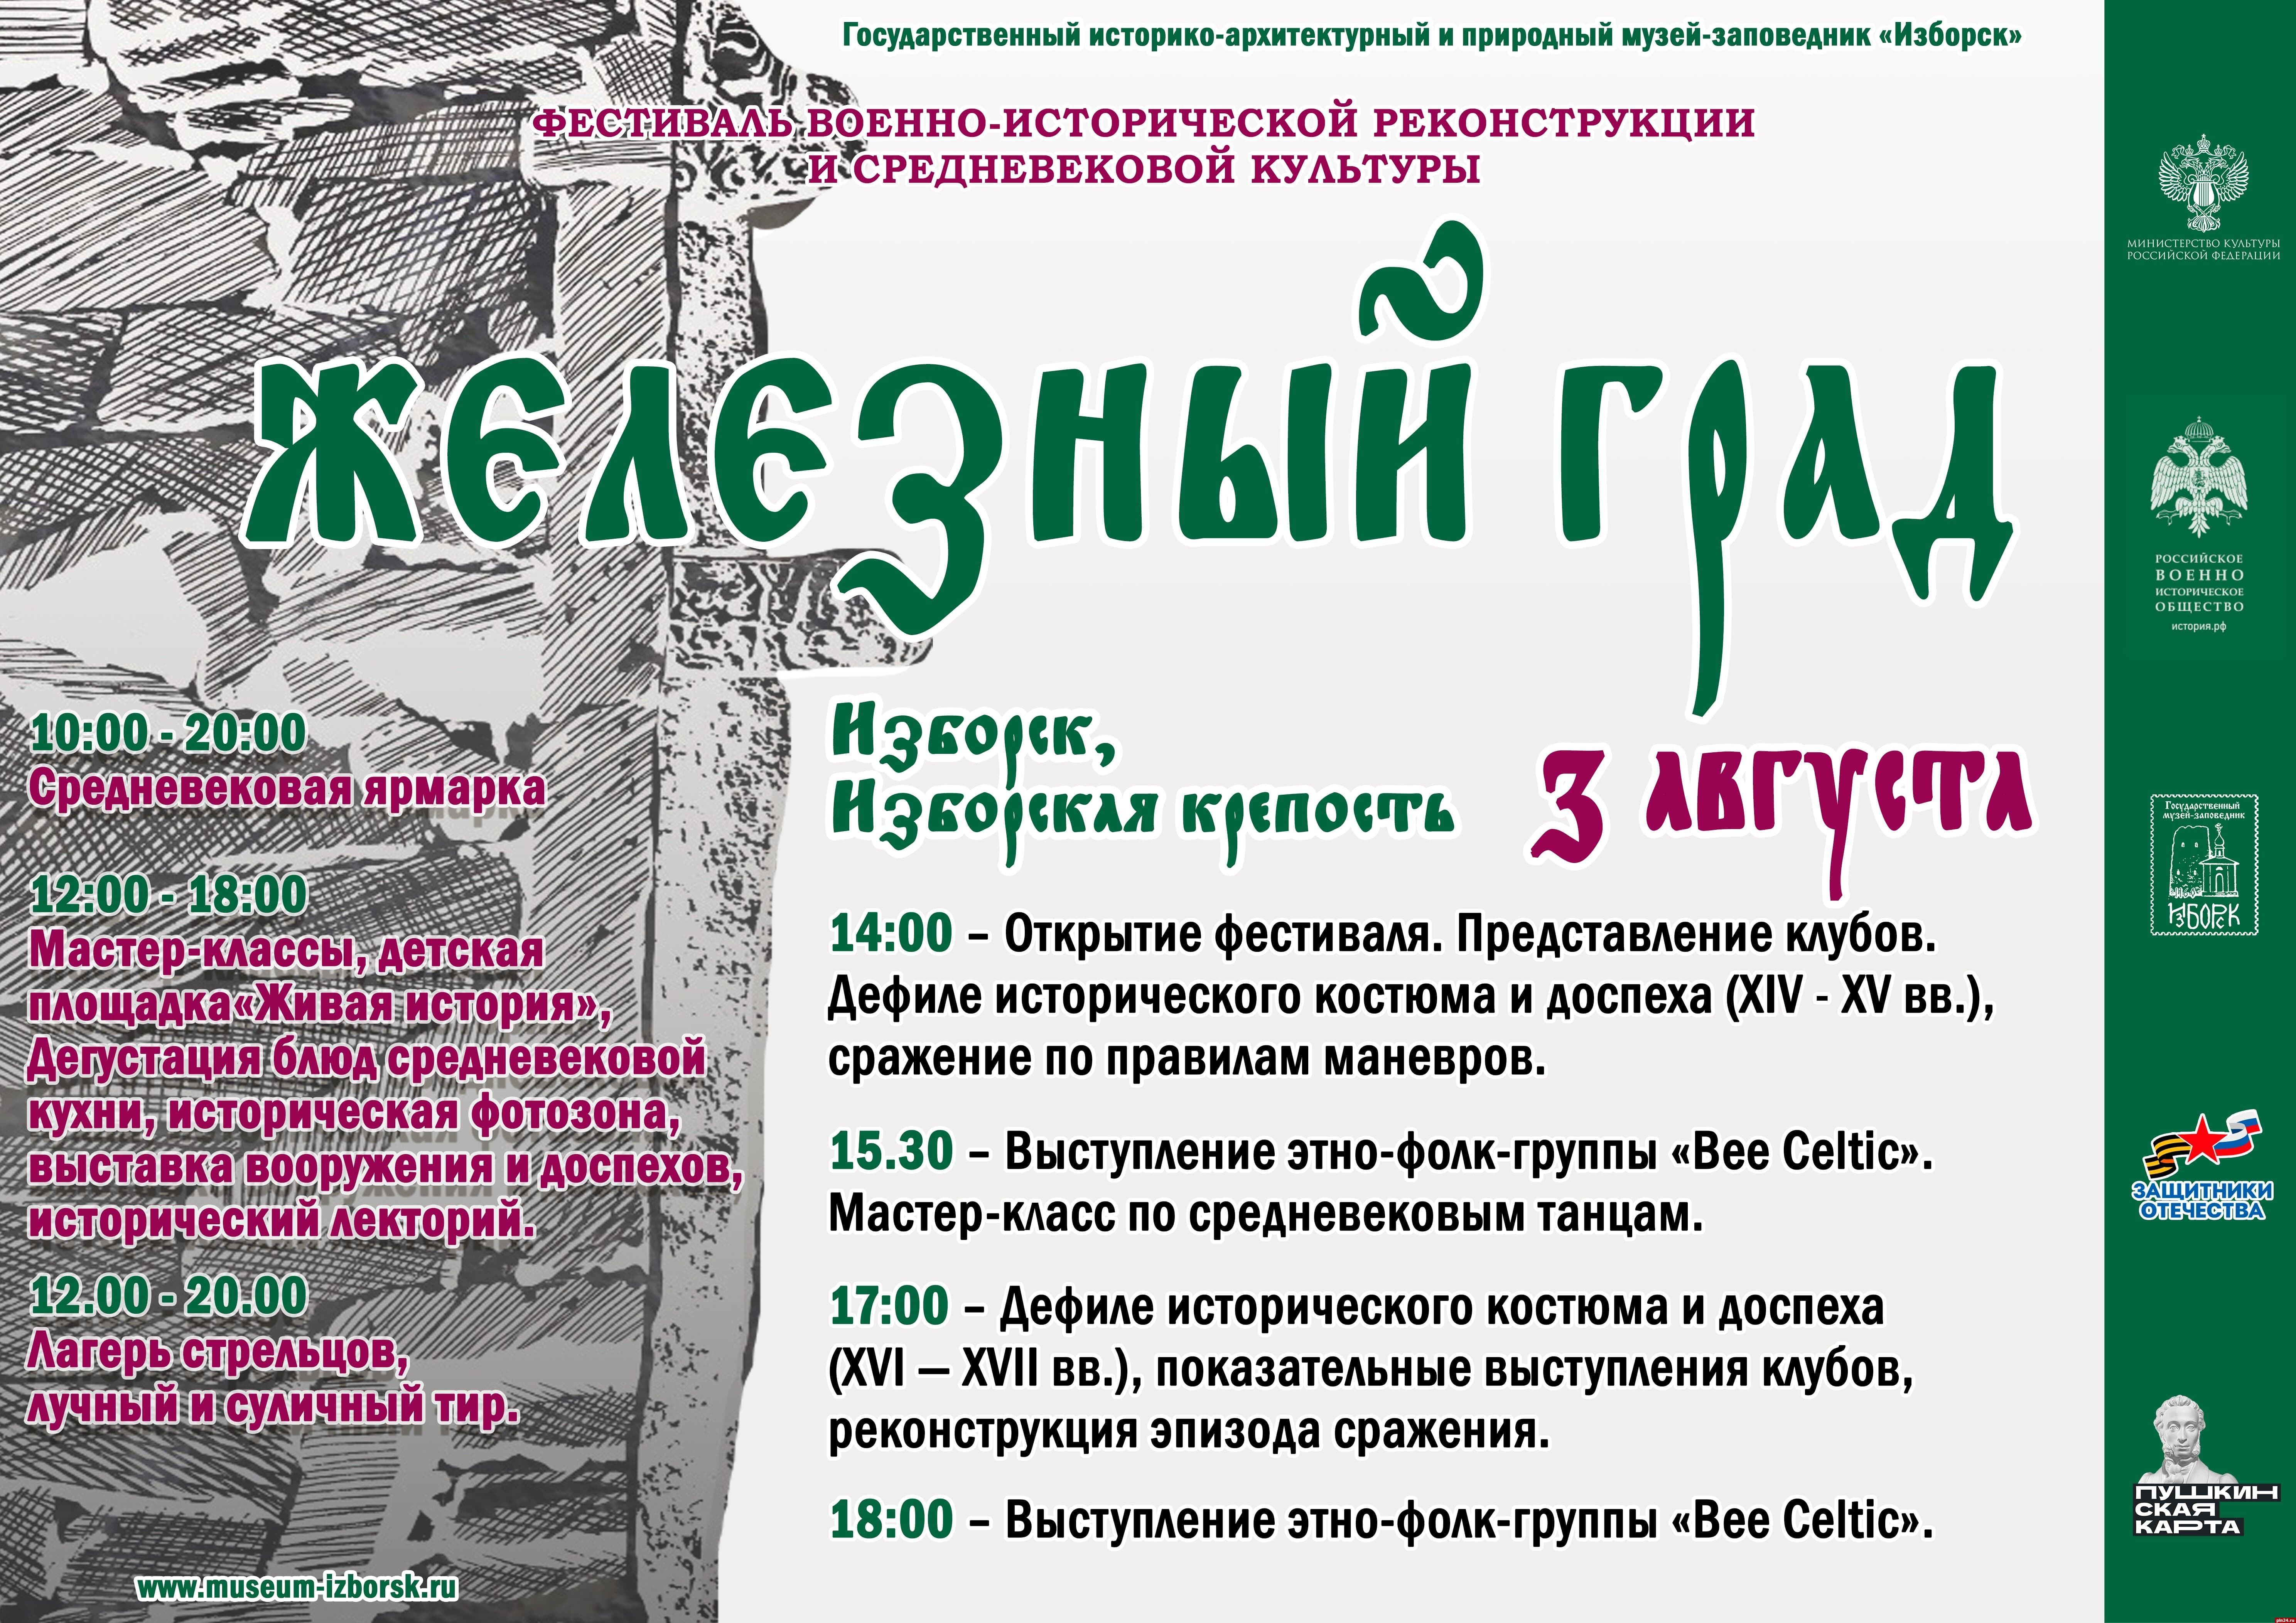 Опубликована программа фестиваля реконструкции «Железный град» в Изборске